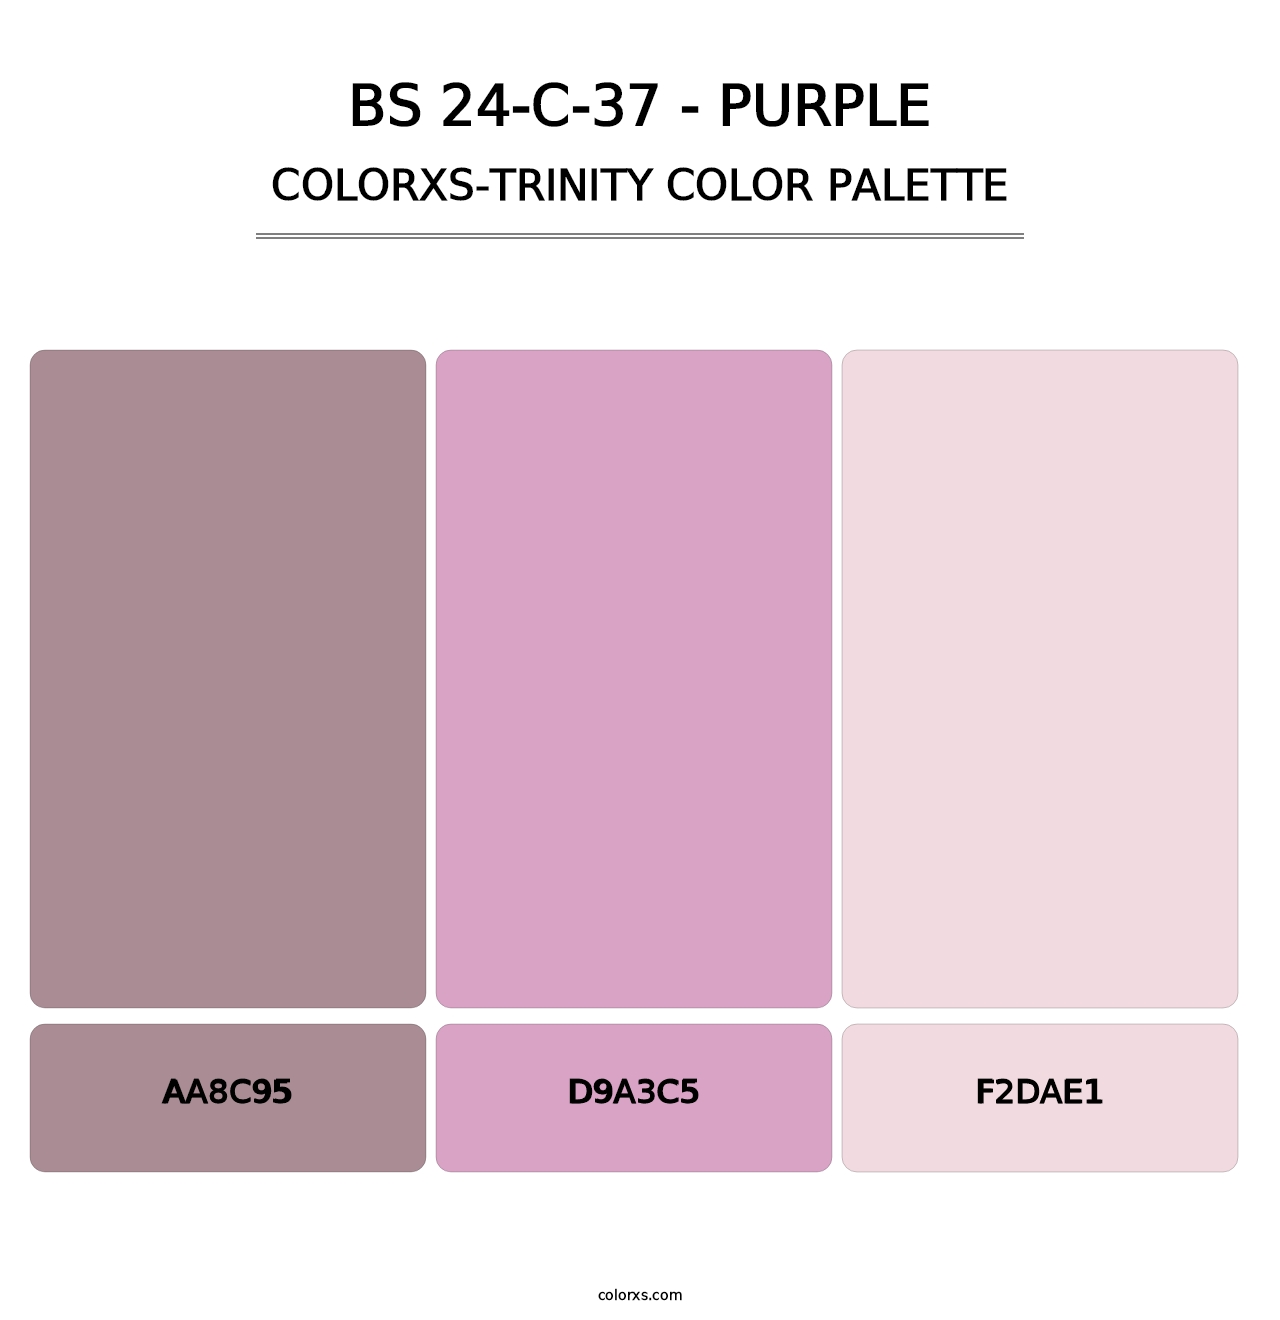 BS 24-C-37 - Purple - Colorxs Trinity Palette